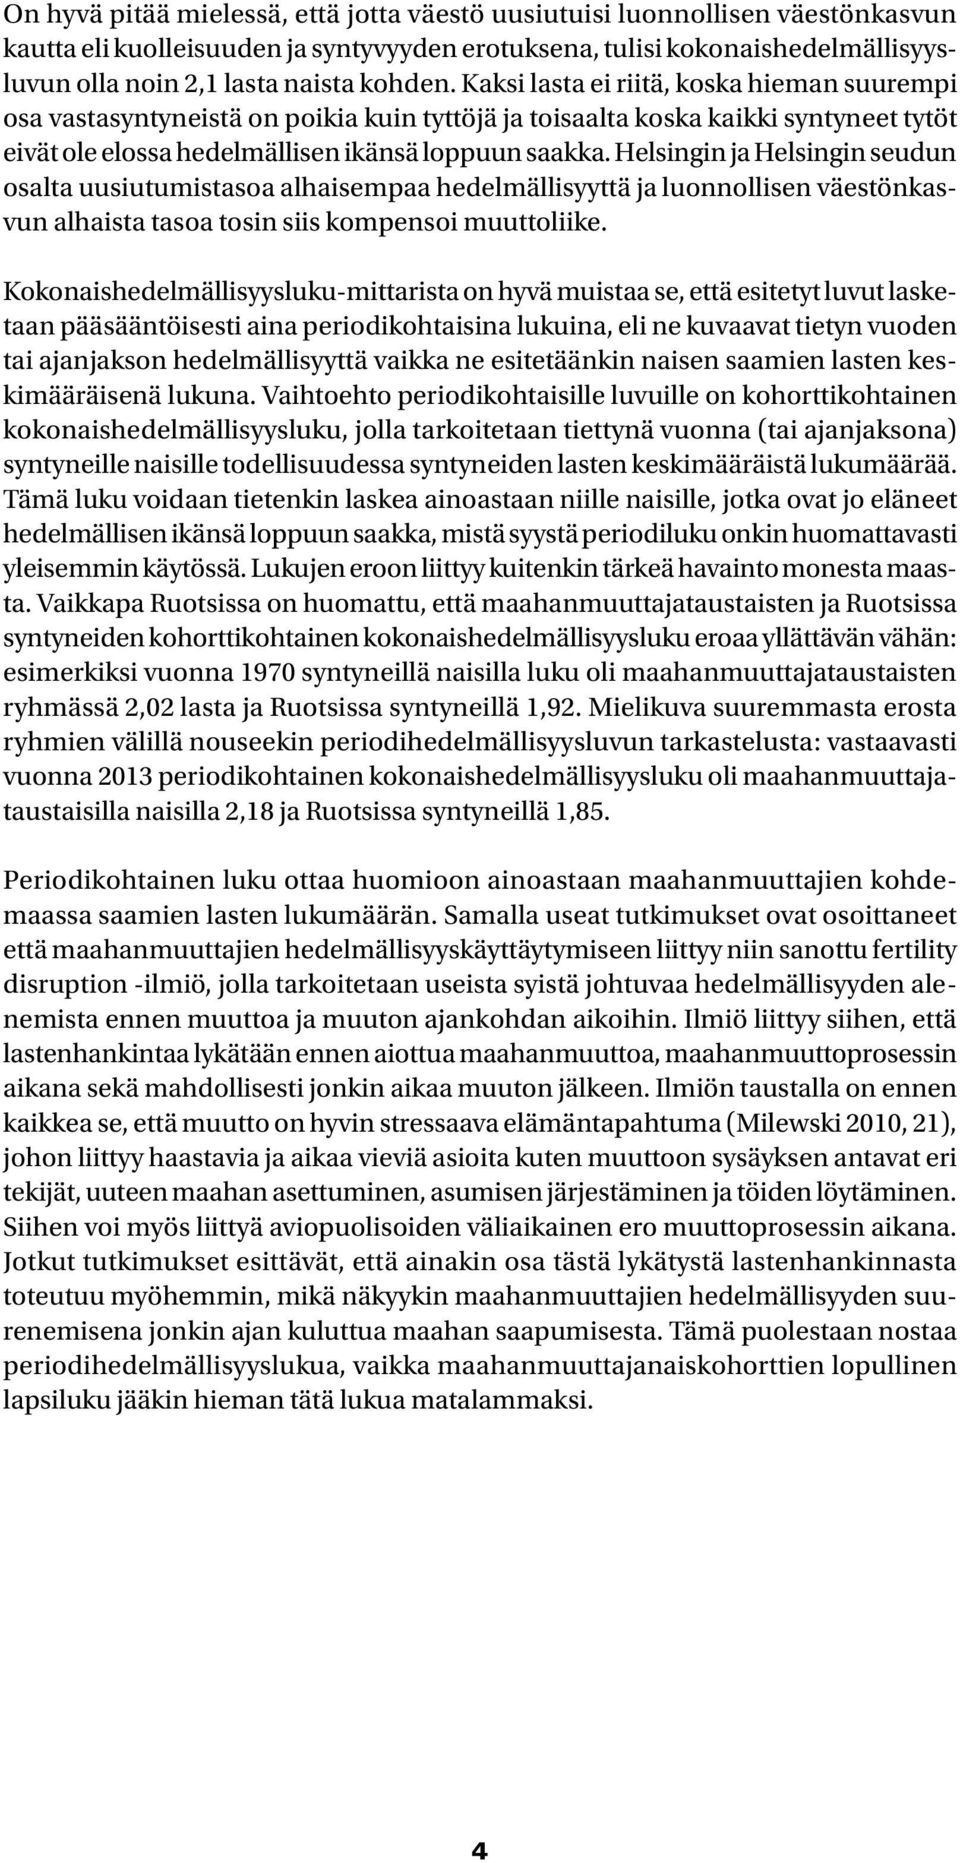 Helsingin ja Helsingin seudun osalta uusiutumistasoa alhaisempaa hedelmällisyyttä ja luonnollisen väestönkasvun alhaista tasoa tosin siis kompensoi muuttoliike.